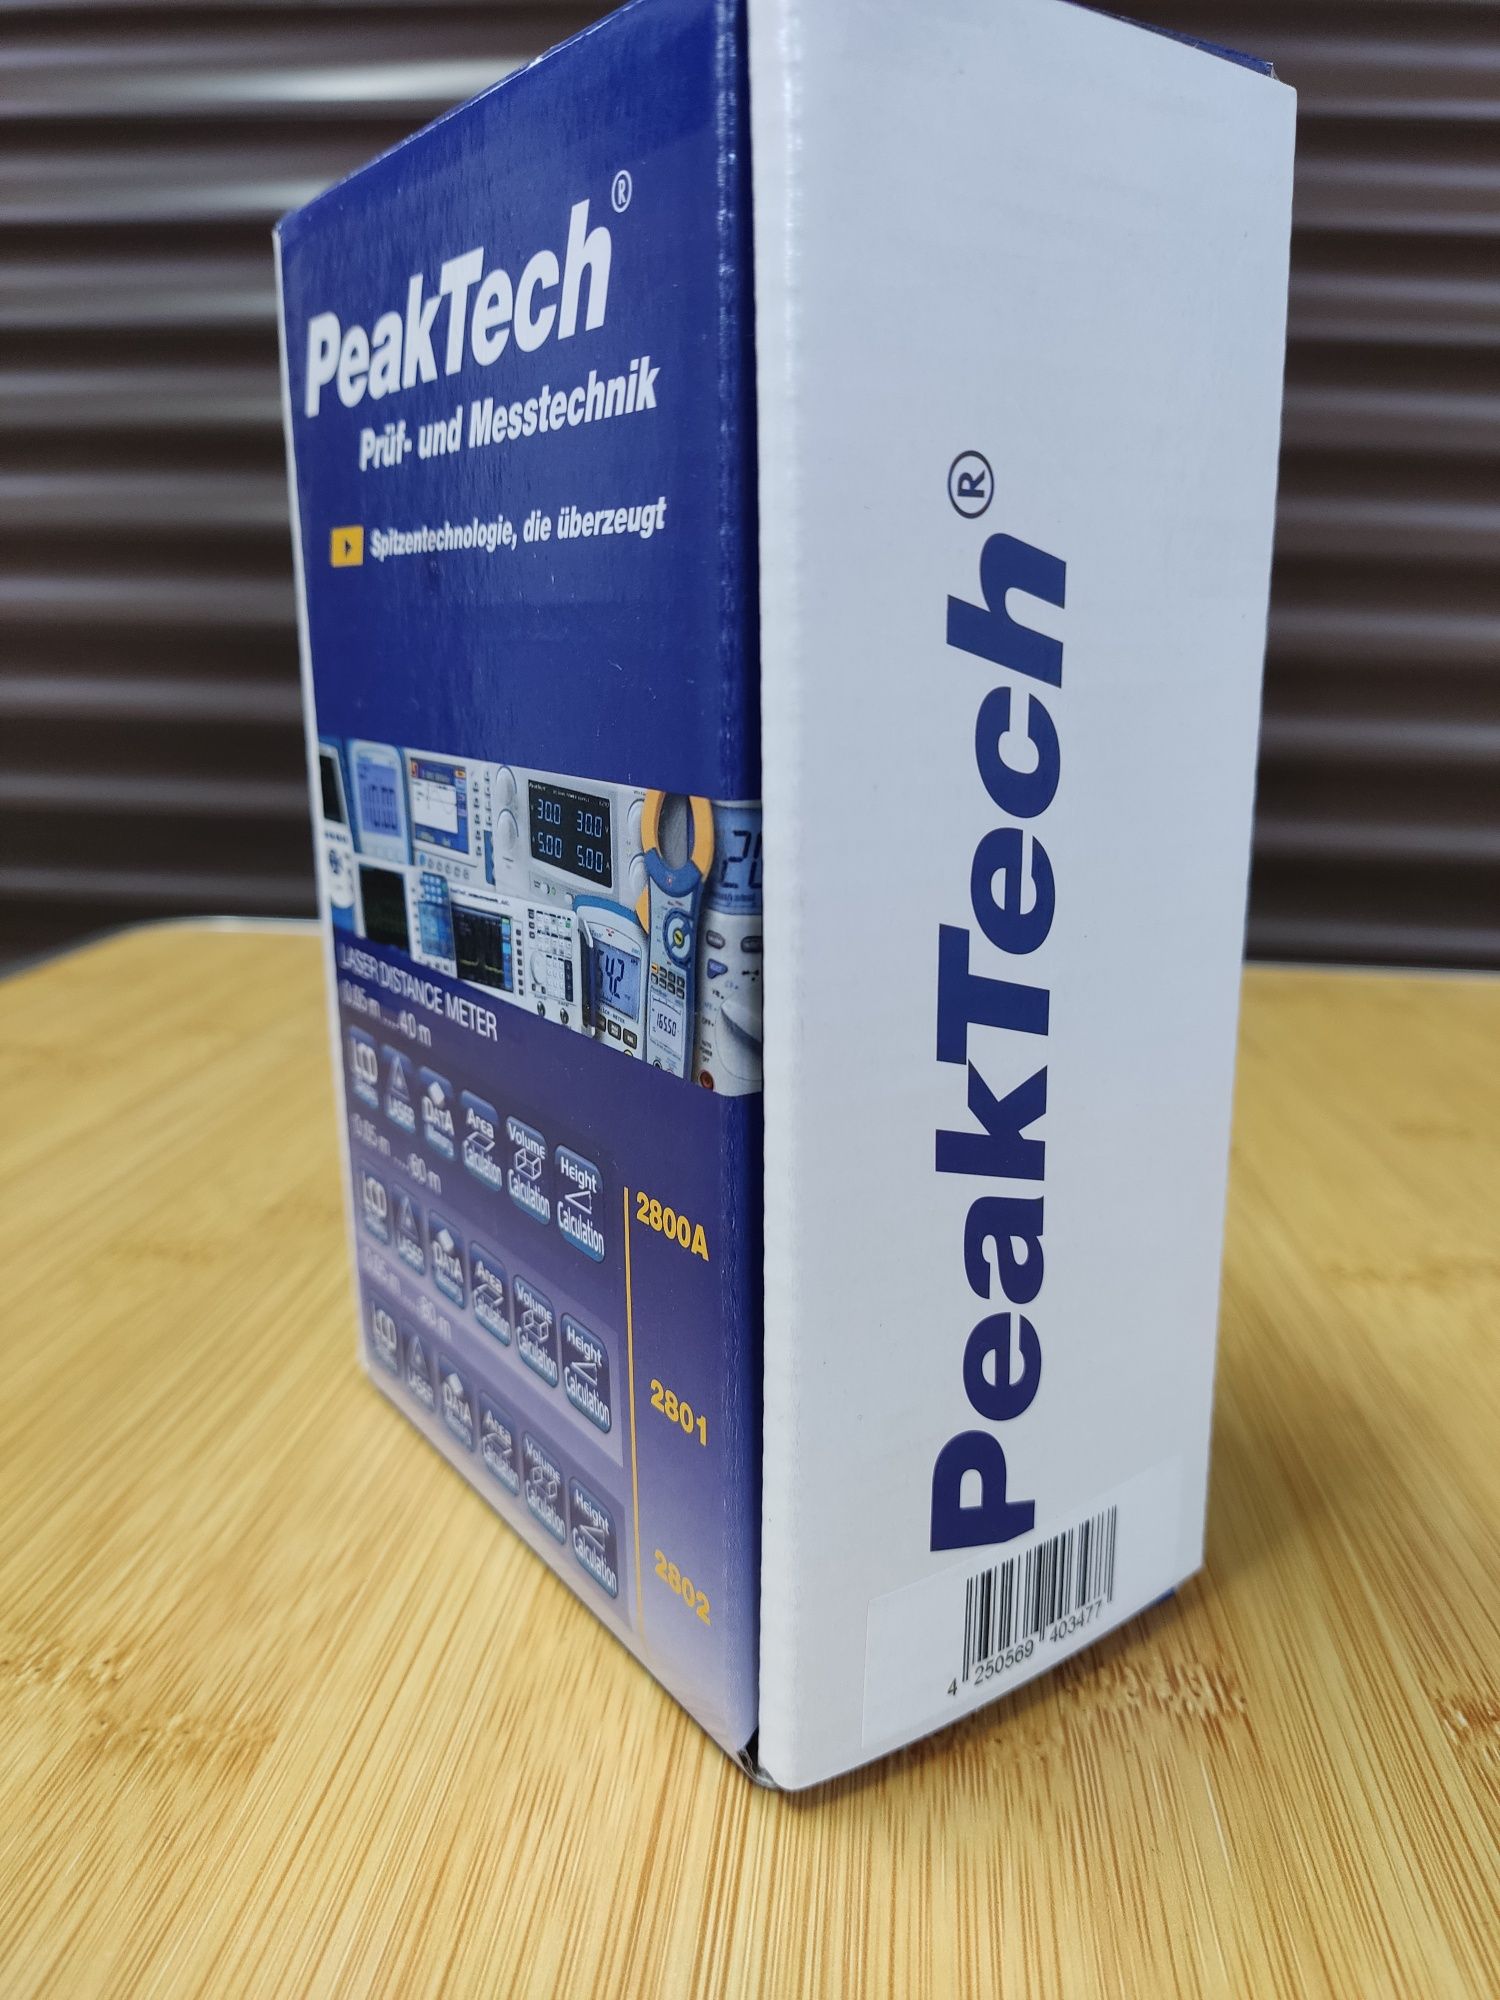 Metru digital laser / Telemetru - PeakTech 2801 NOU